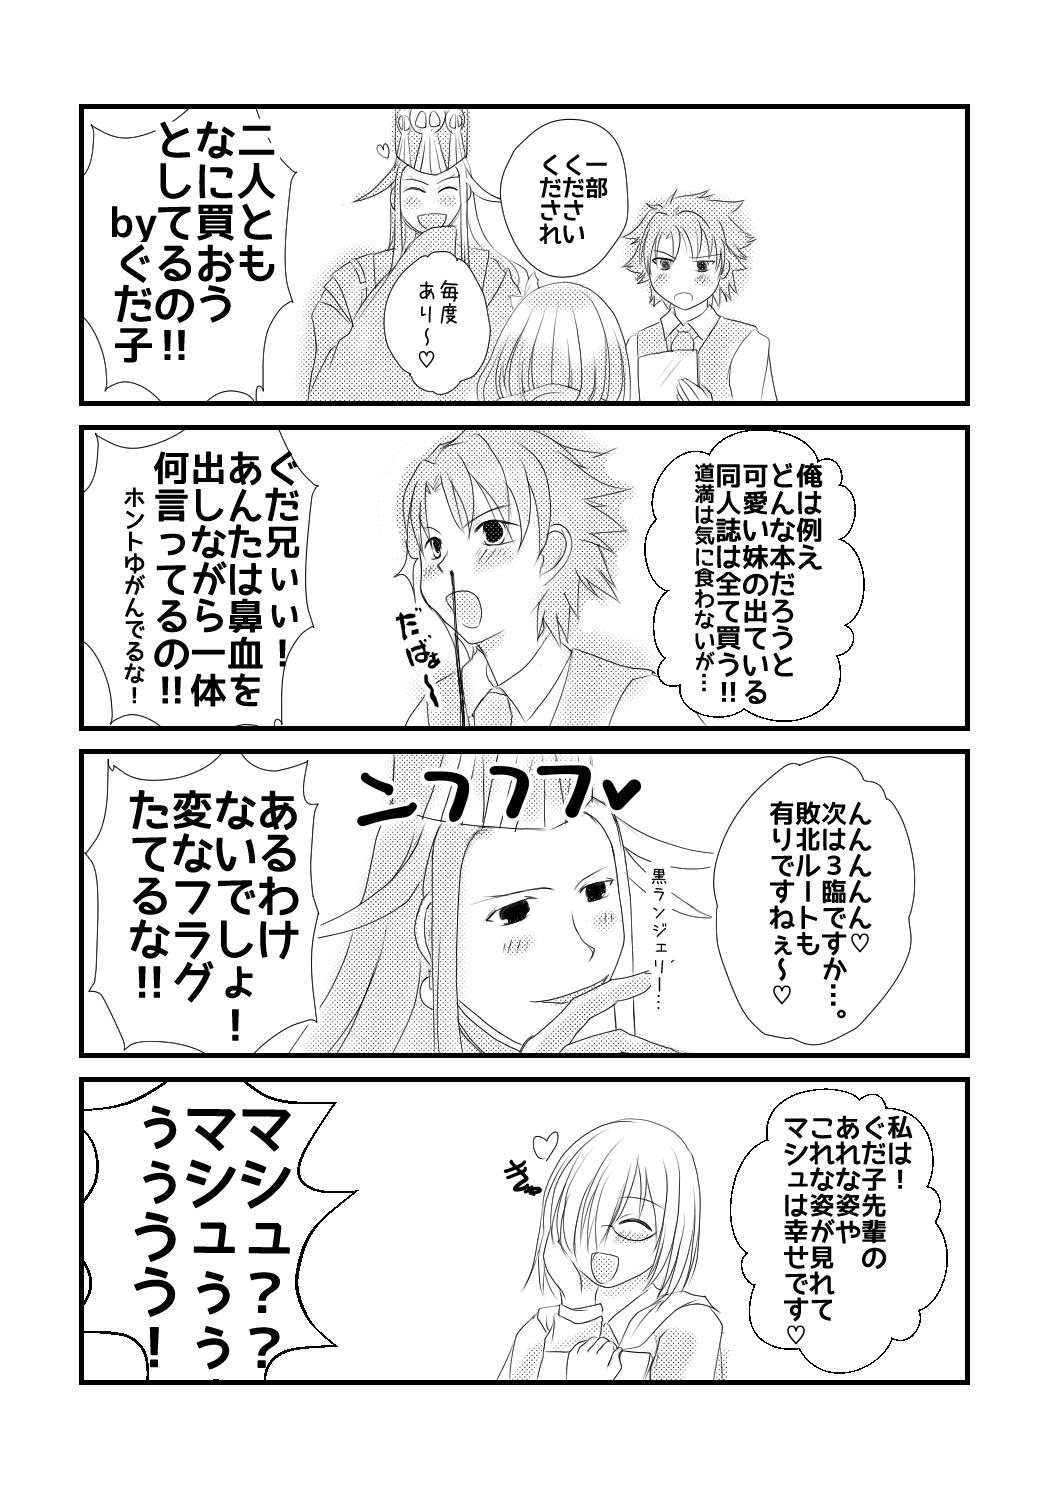 Fingers ] Rin guda ♀ rakugaki guda yuru manga(Fate/Grand Order] - Fate grand order Inked - Page 7